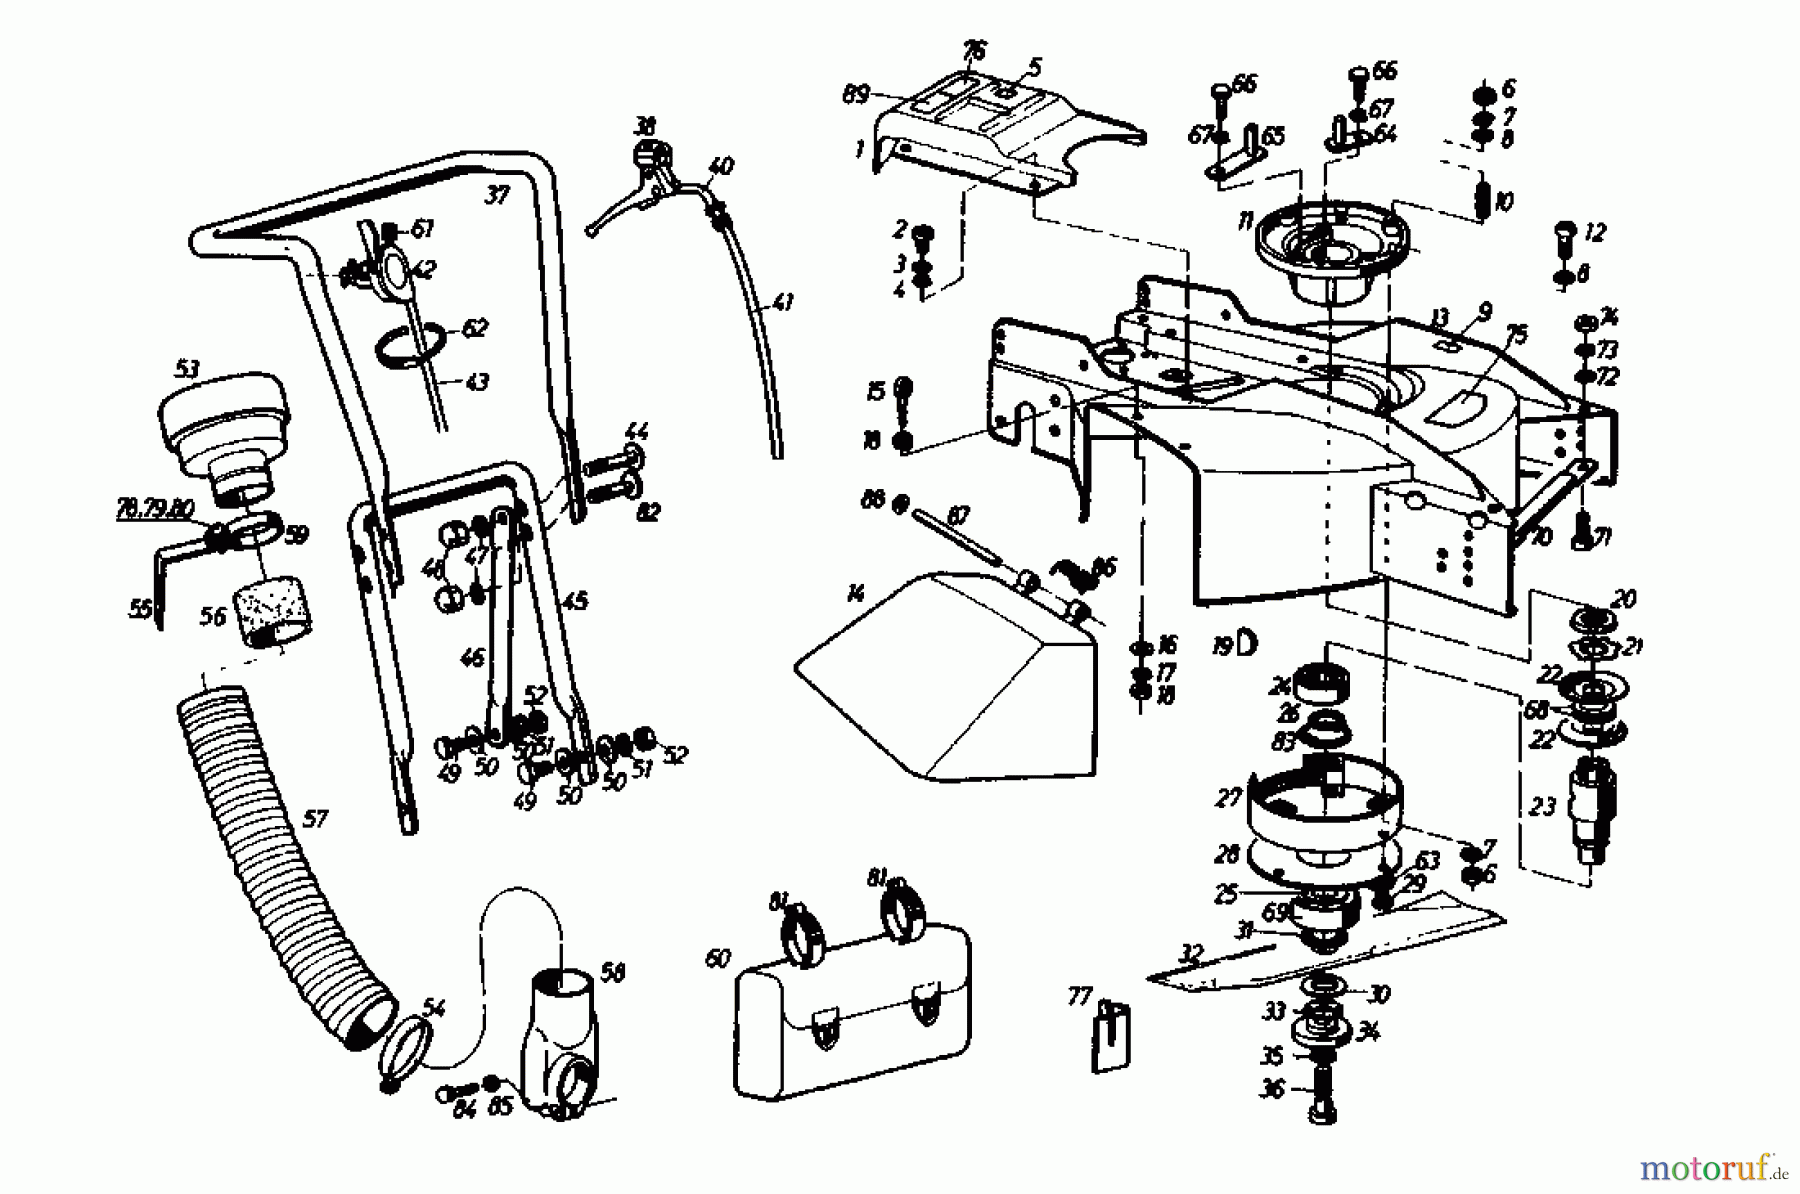  Gutbrod Motormäher mit Antrieb SB 51 R 02608.04  (1989) Grundgerät